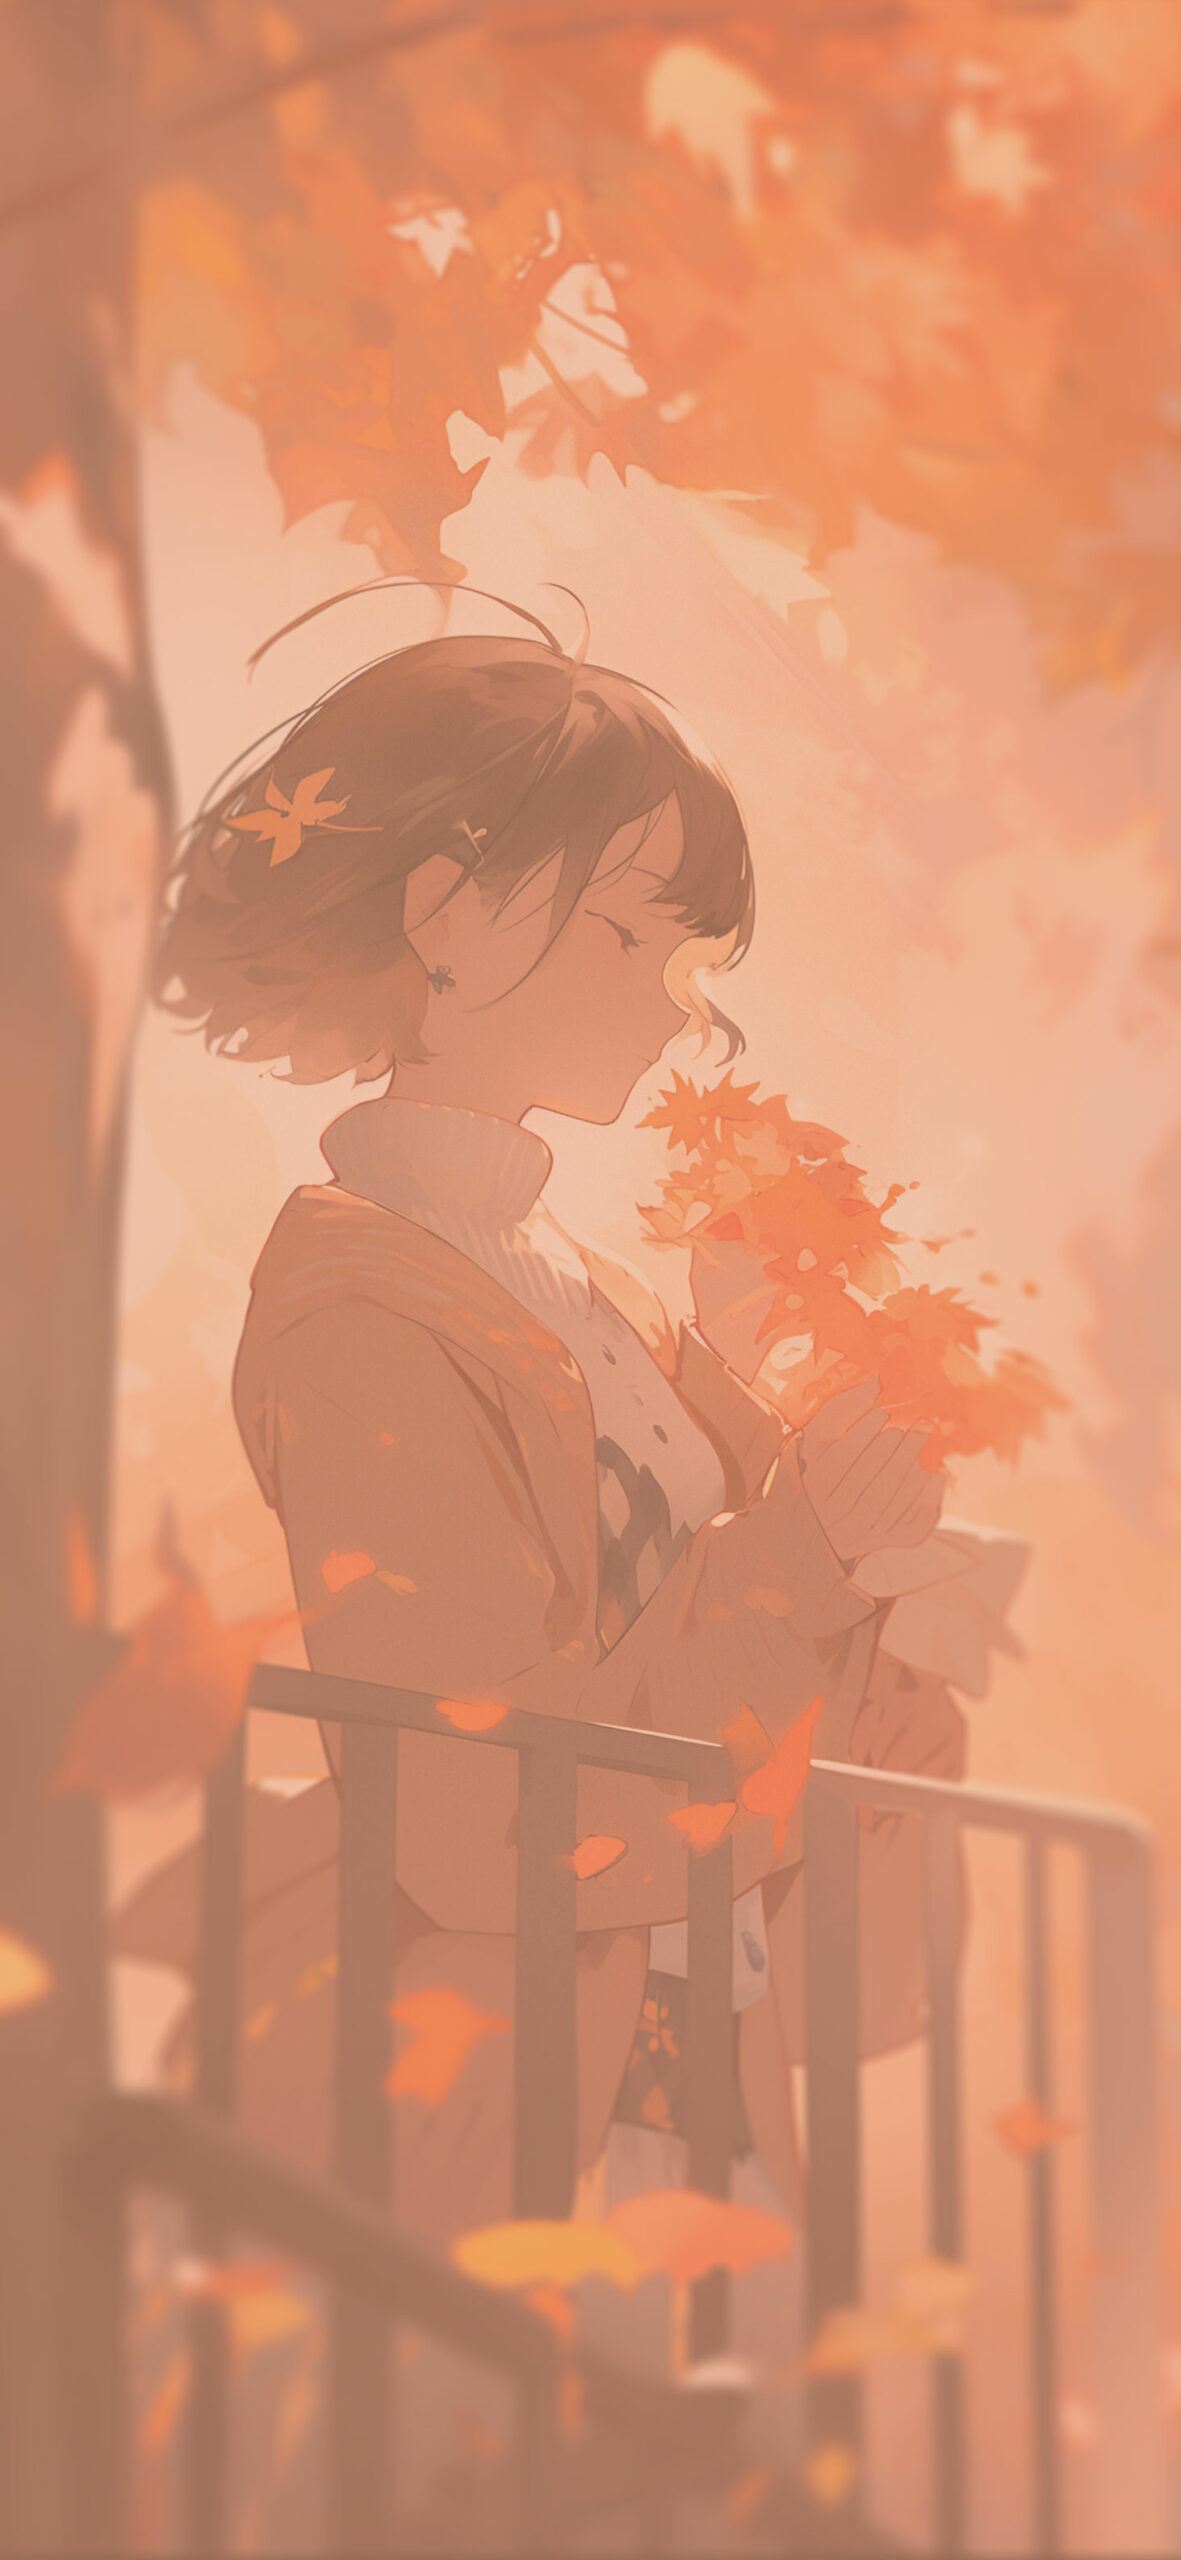 Anime Girl Black & Orange Wallpaper - Anime Aesthetic Wallpaper